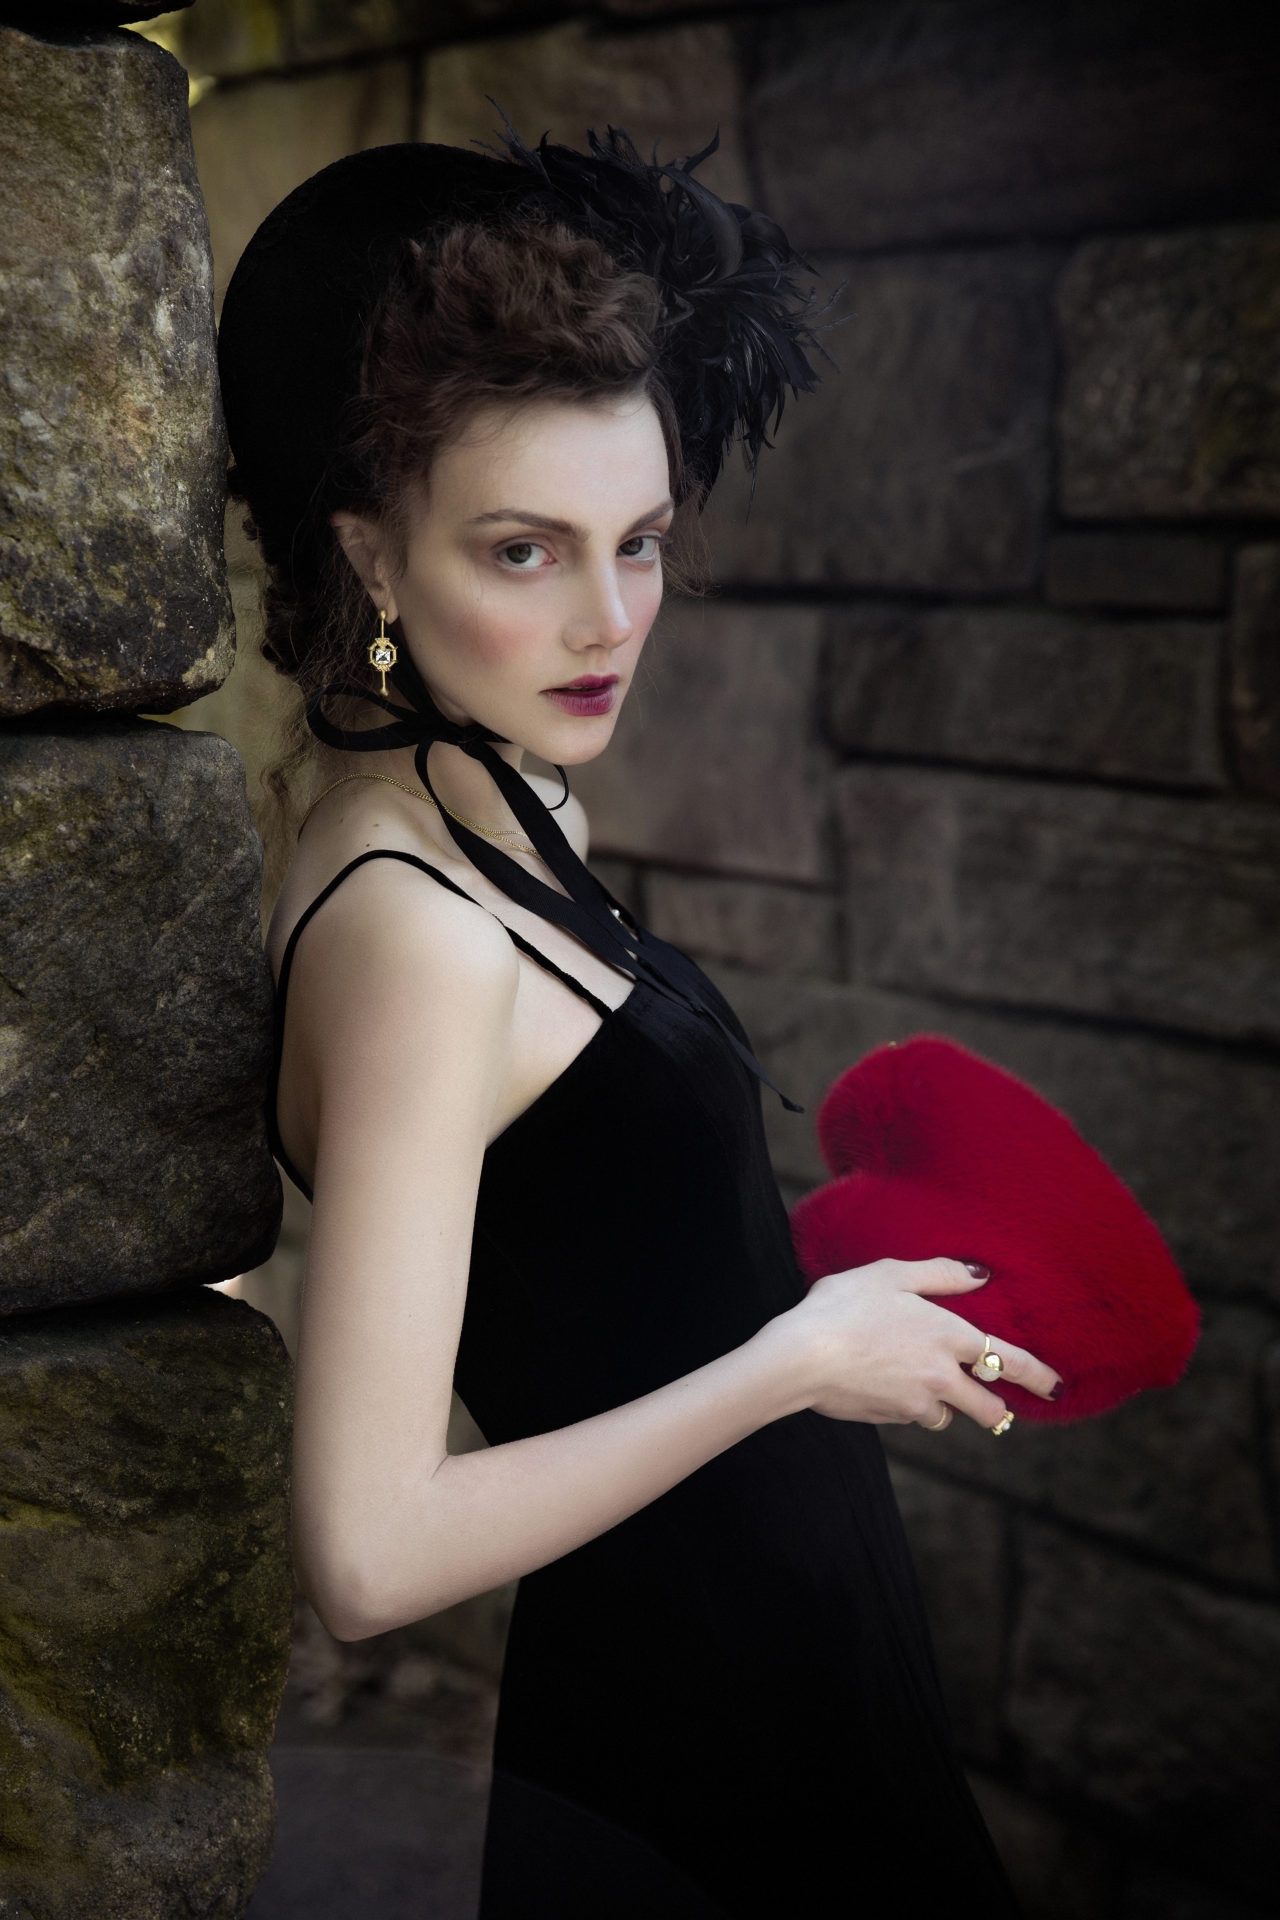 Velvet dress — Breelayne; Headdress - Сhuchu. Fur clutch - Georgine. Neckless, earrings, rings - Solomeina